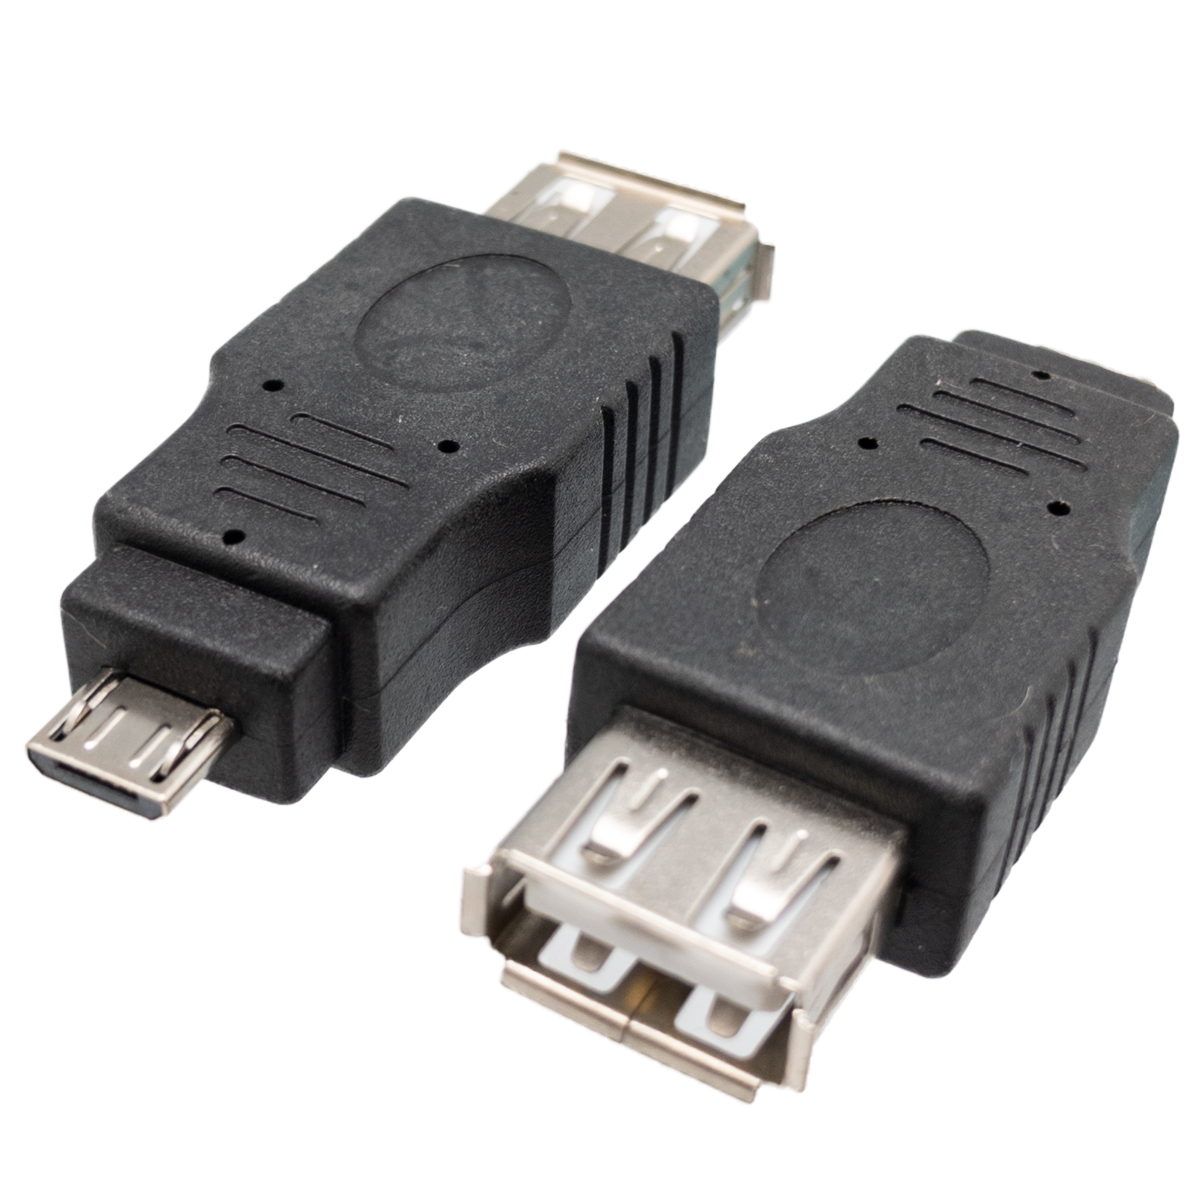 USB 2.0 à Femelle à MICRO USB 5p Mâle, níquel, couleur Noir